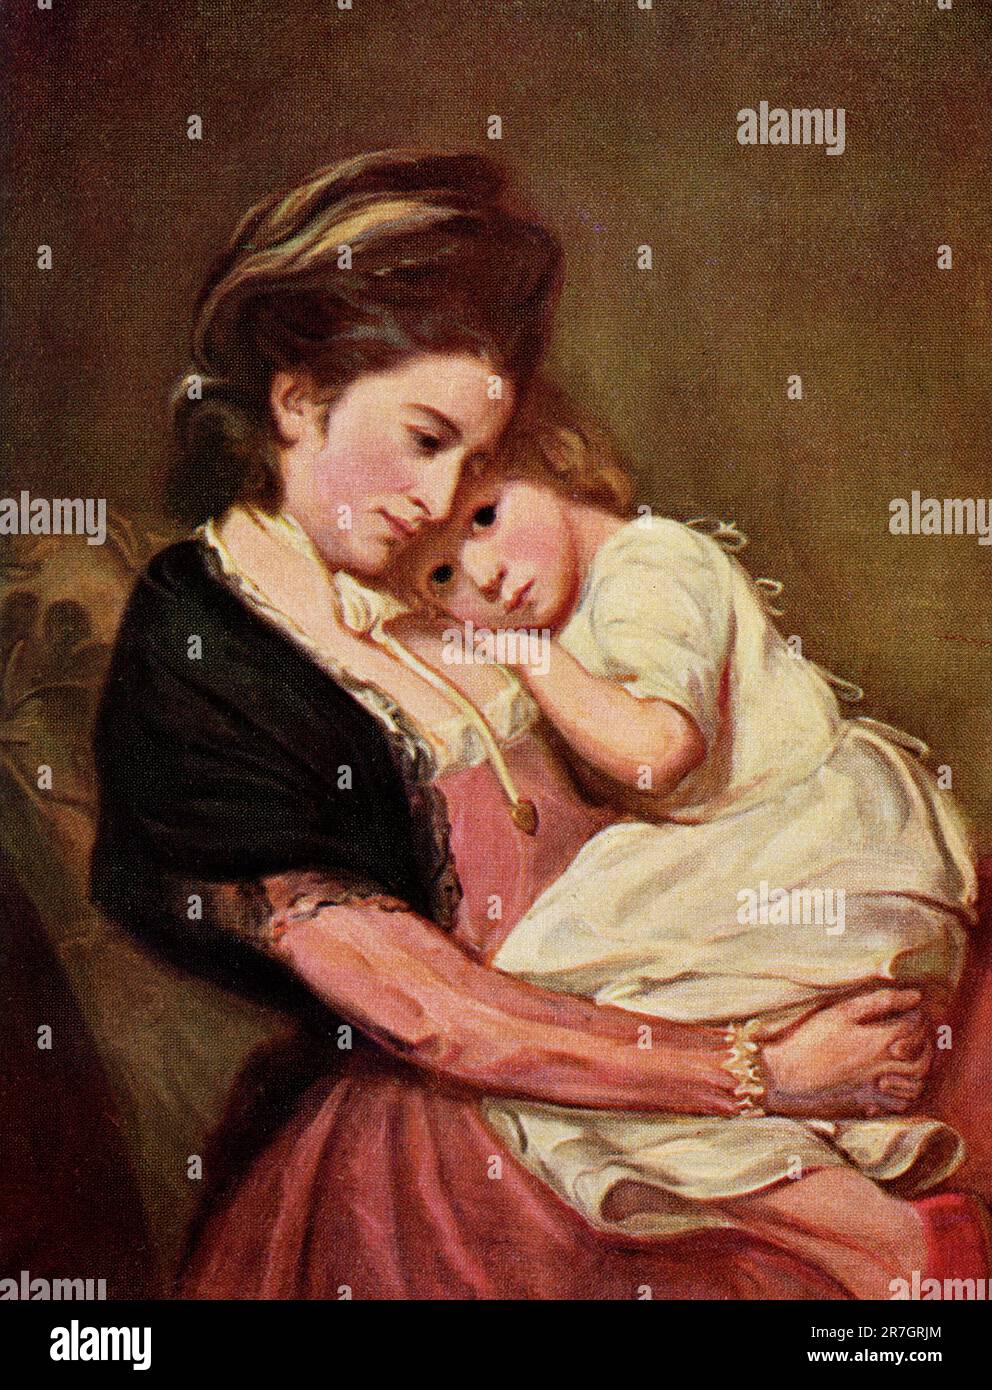 La légende du début des années 19a0s est la suivante : « Lady with a Child by George Romney. Les yeux bleu foncé de l'enfant contemplez le monde dans l'émerveillement répotent la pose est délicieusement naturelle. Le génie du design de Romney ne l’a jamais manqué quand son sujet était une fille, une mère et un enfant, ou un groupe d’enfants en jeu. George Romney (1734-1802) était un peintre de portrait anglais. Il était l'artiste le plus à la mode de son époque, peignant de nombreuses personnalités de la société, dont sa muse artistique, Emma Hamilton, maîtresse de Lord Nelson.' George Romney (1734-1802) était un peintre de portrait anglais. Il était le plus fashio Banque D'Images